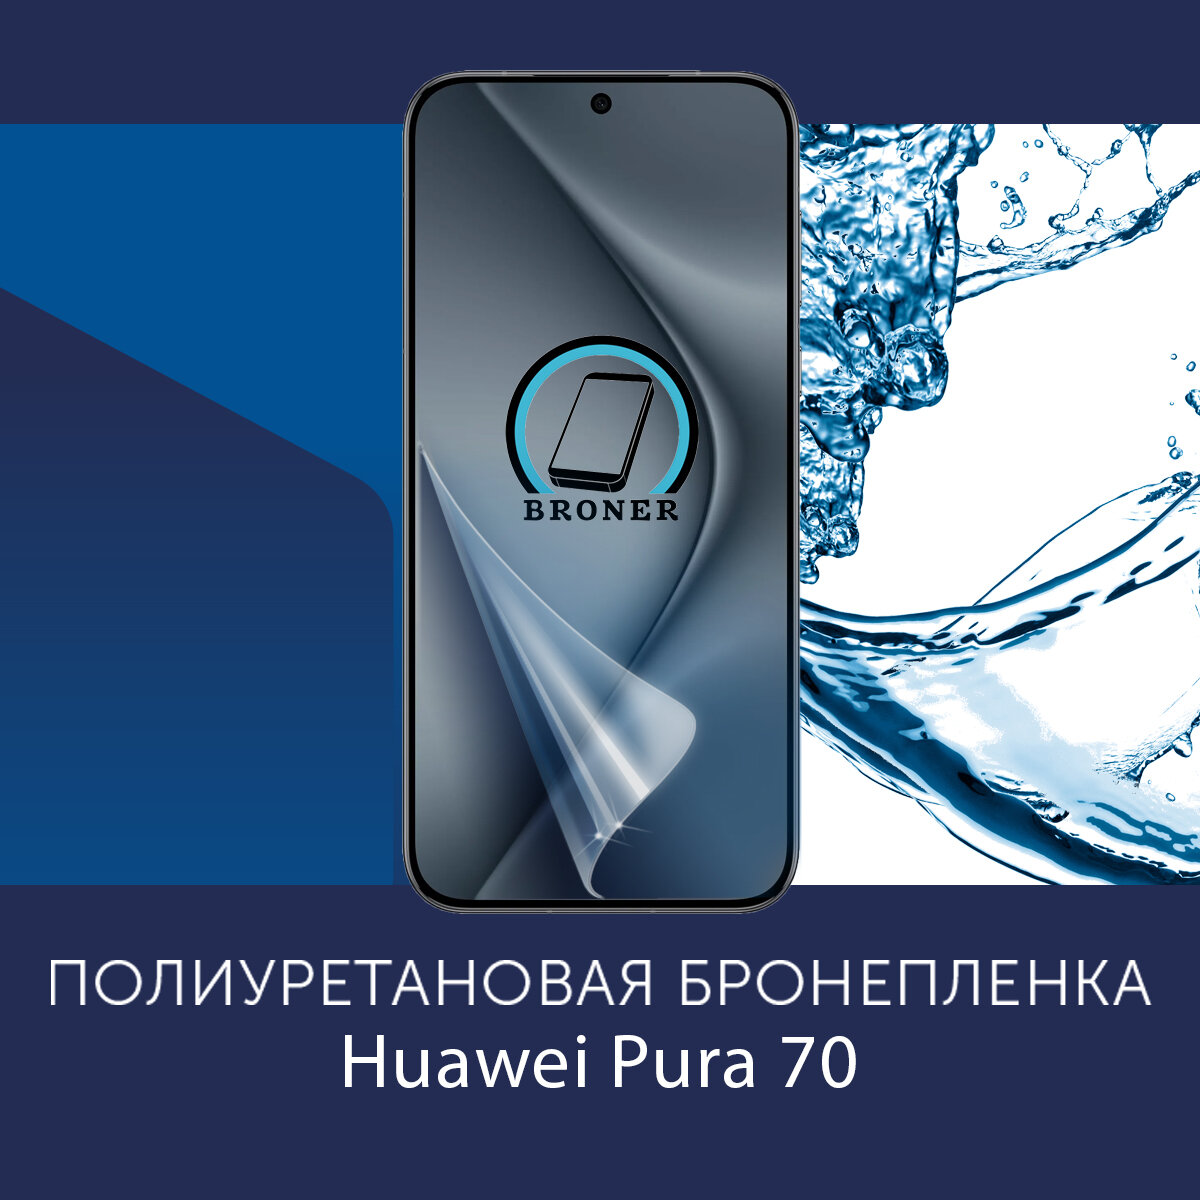 Полиуретановая бронепленка для Huawei Pura 70 / Защитная плёнка на экран, совместима с чехлом, с вырезом под камеру / Глянцевая